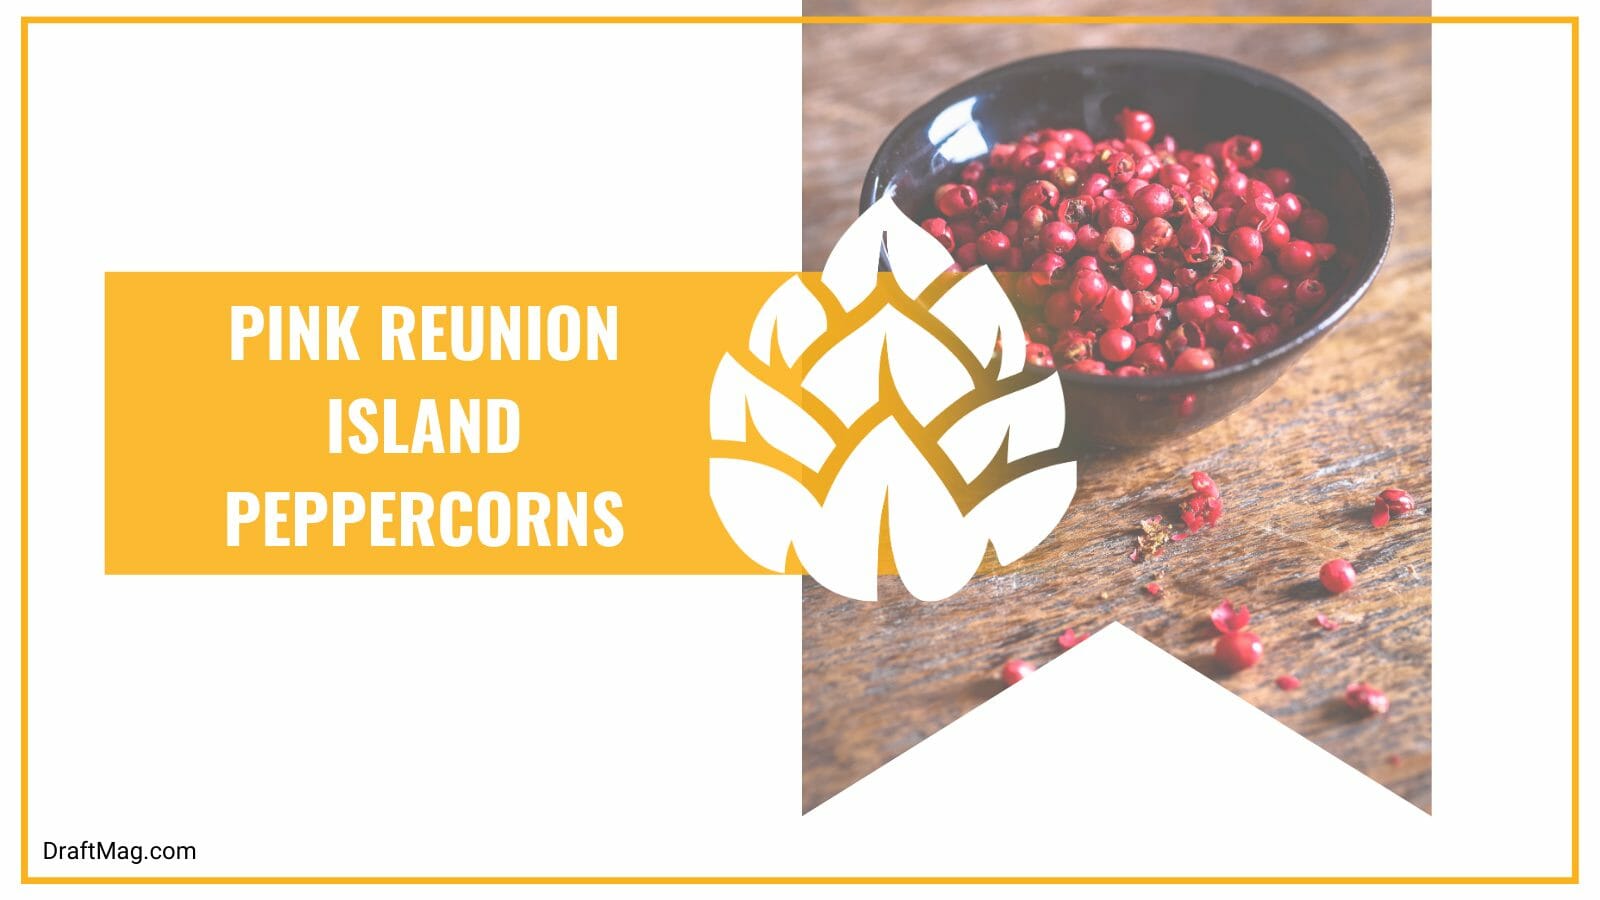 Pink reunion island peppercorns